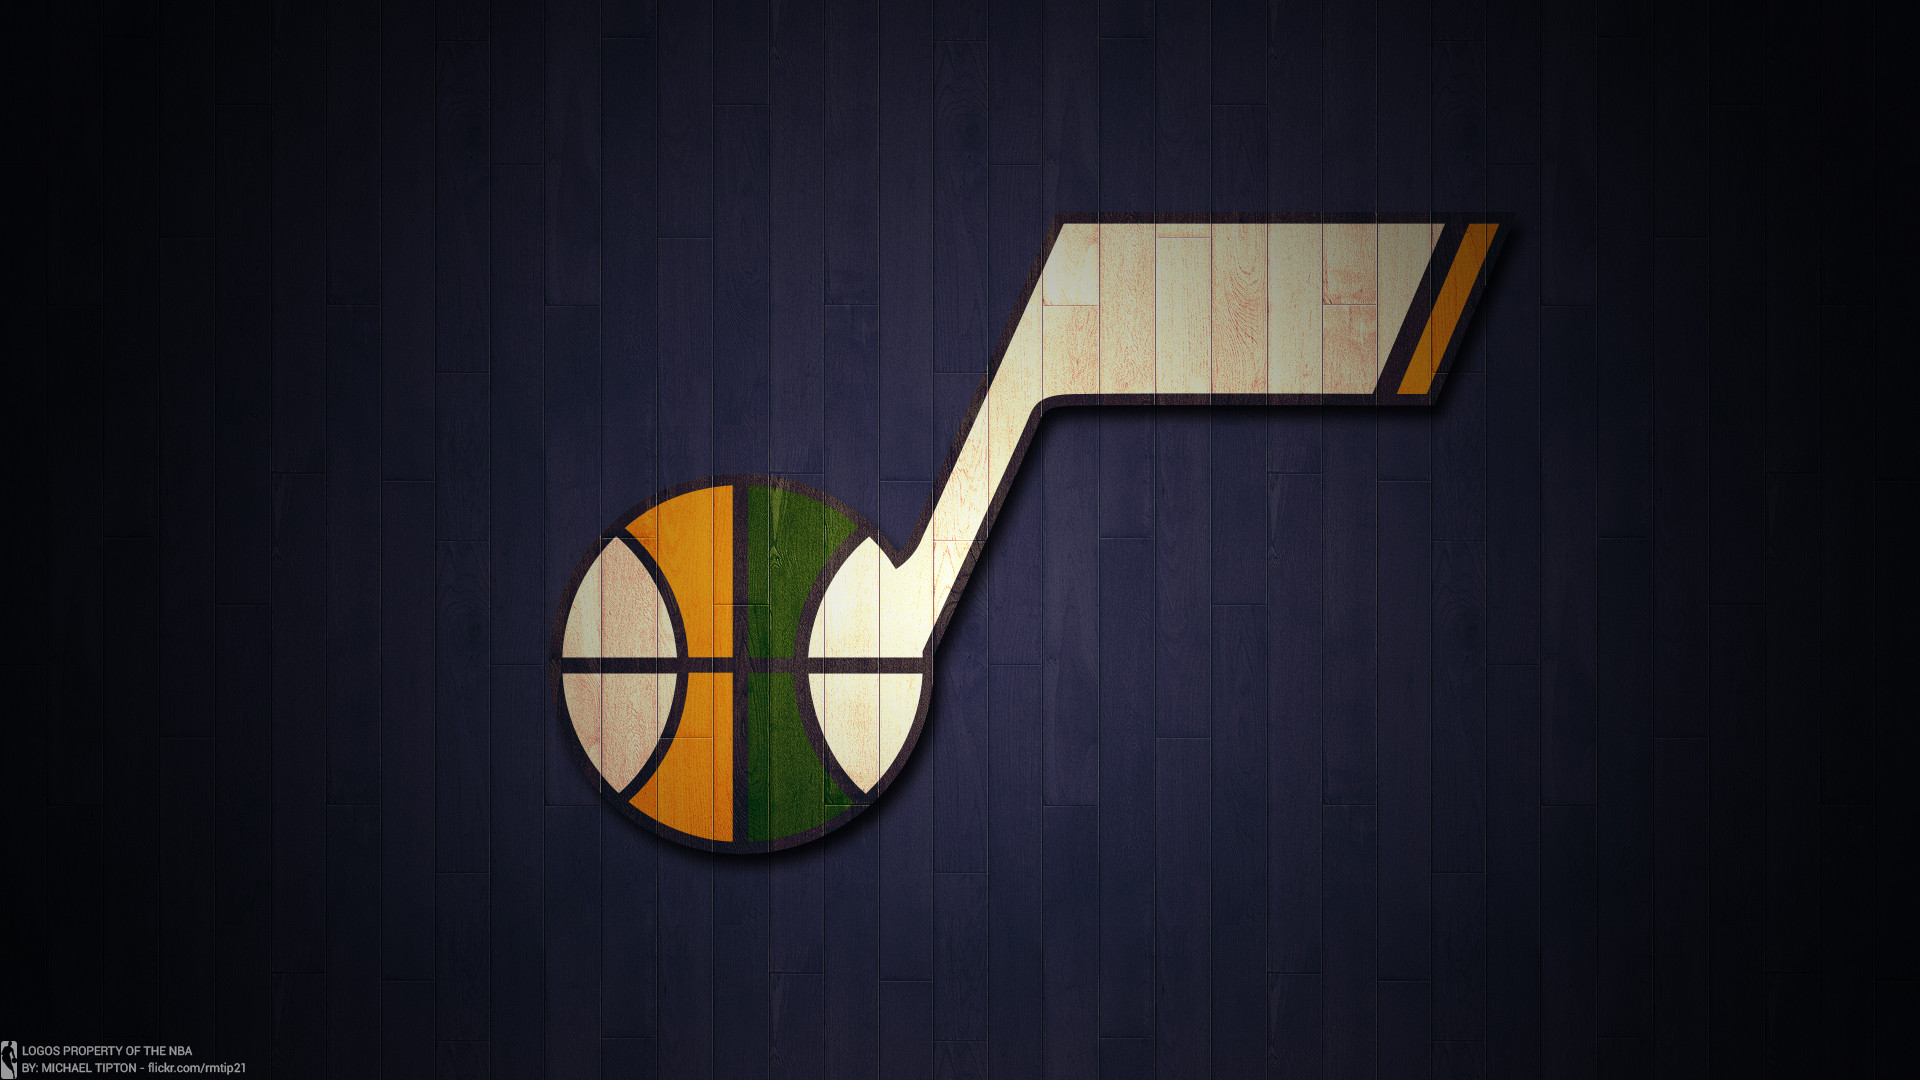 1920x1080 ... NBA 2017 Utah Jazz hardwood logo desktop wallpaper ...